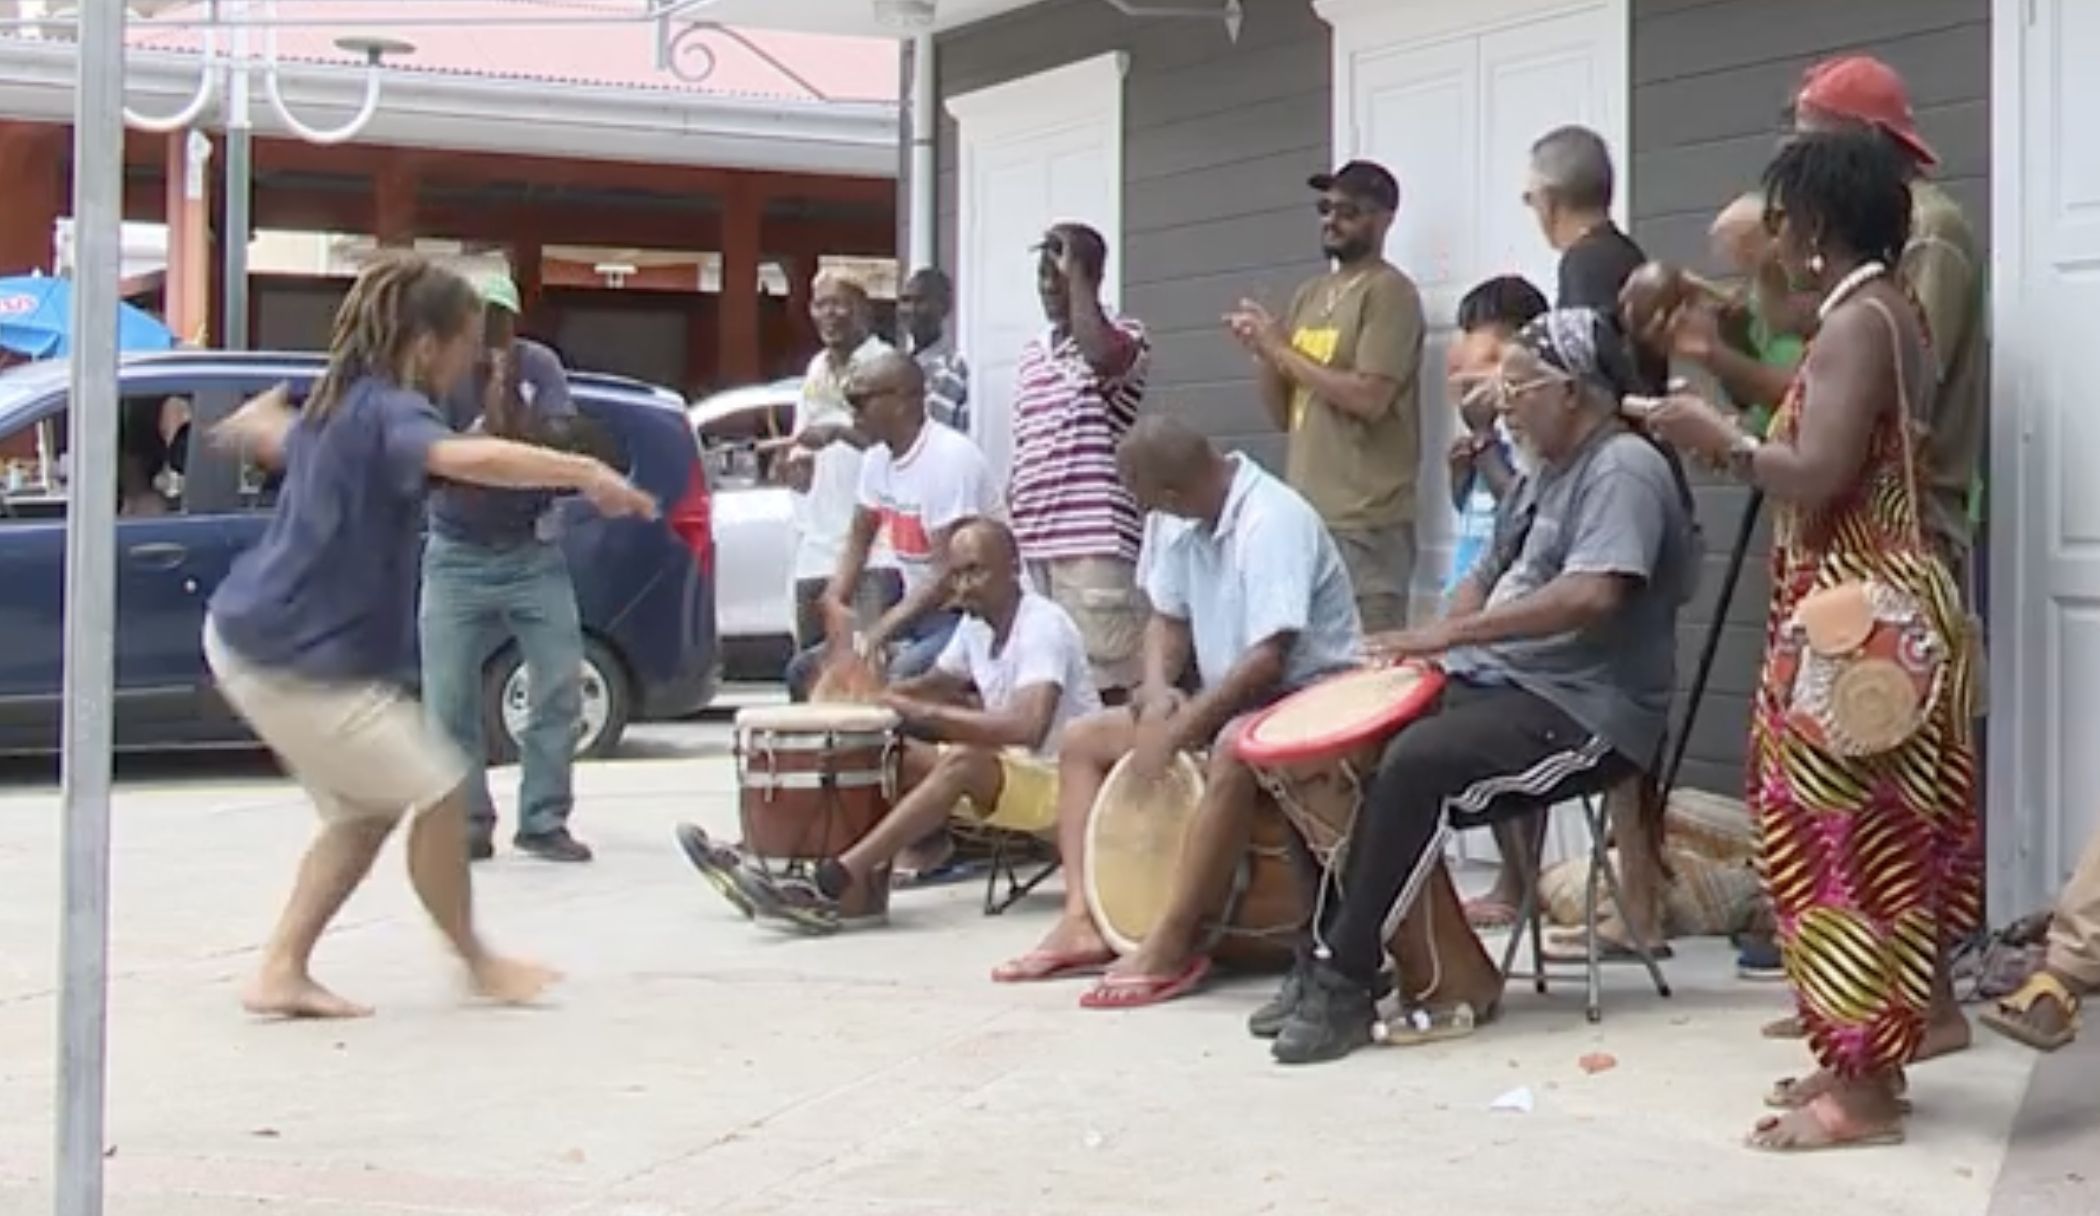 Gwoka à Grand Bourg : entrez dans la danse avec le groupe Swe Ka